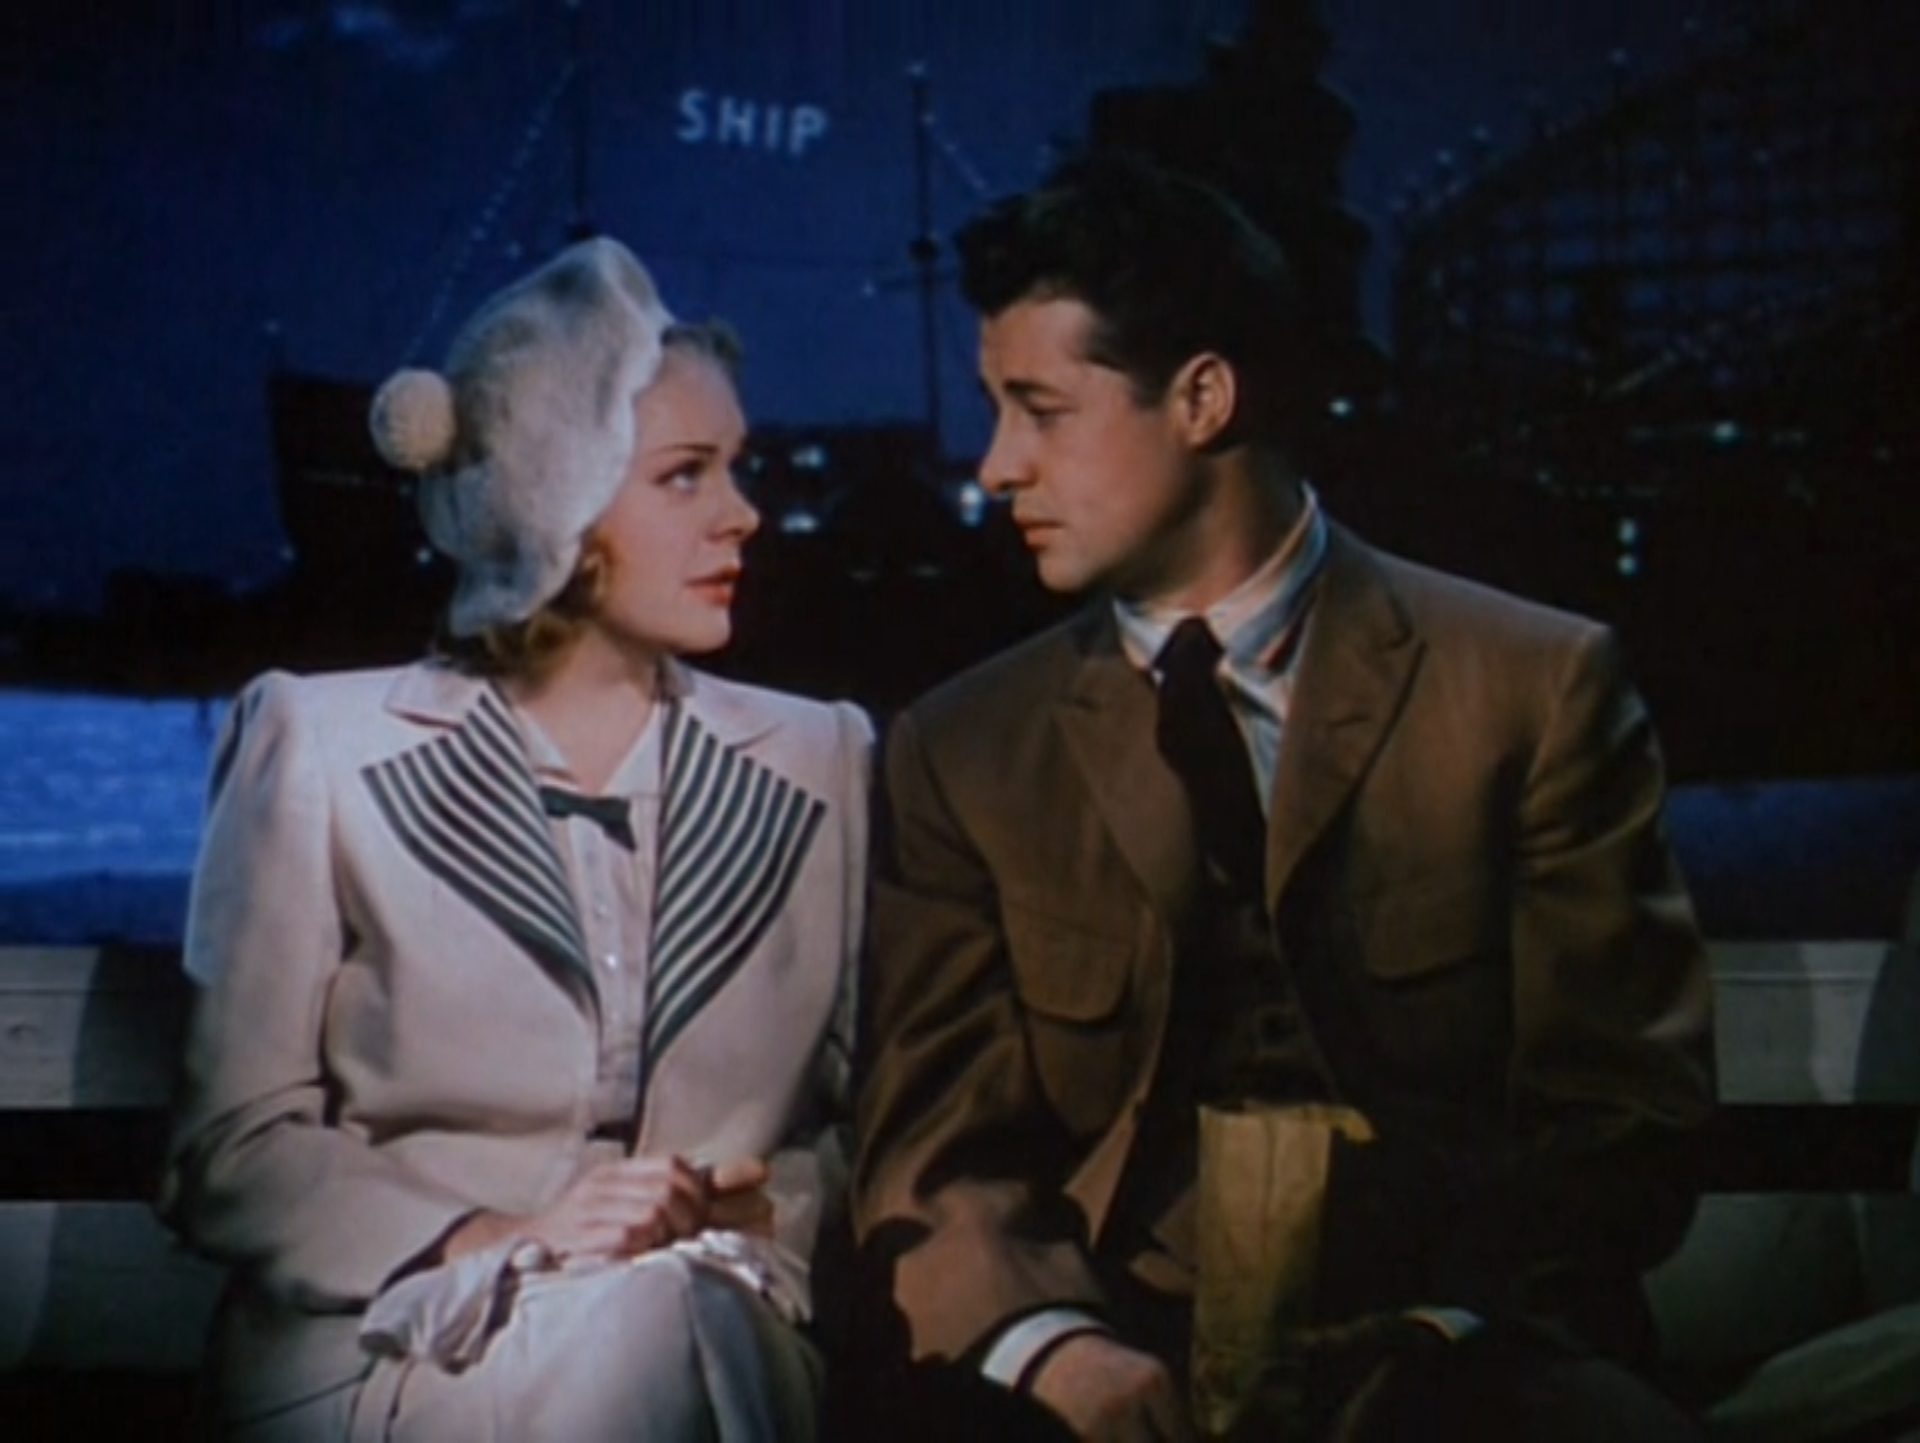 Technicolor-Aufnahme von Alice Faye als junge Schauspielerin Molly Adair und Don Ameche als junger Regisseur Michael Linnett Connors in abendlich-romantischer Atmosphäre auf einer Parkbank, im Hintergrund Küstenwasser und ein Schiff mit der Leuchtreklame Ship.